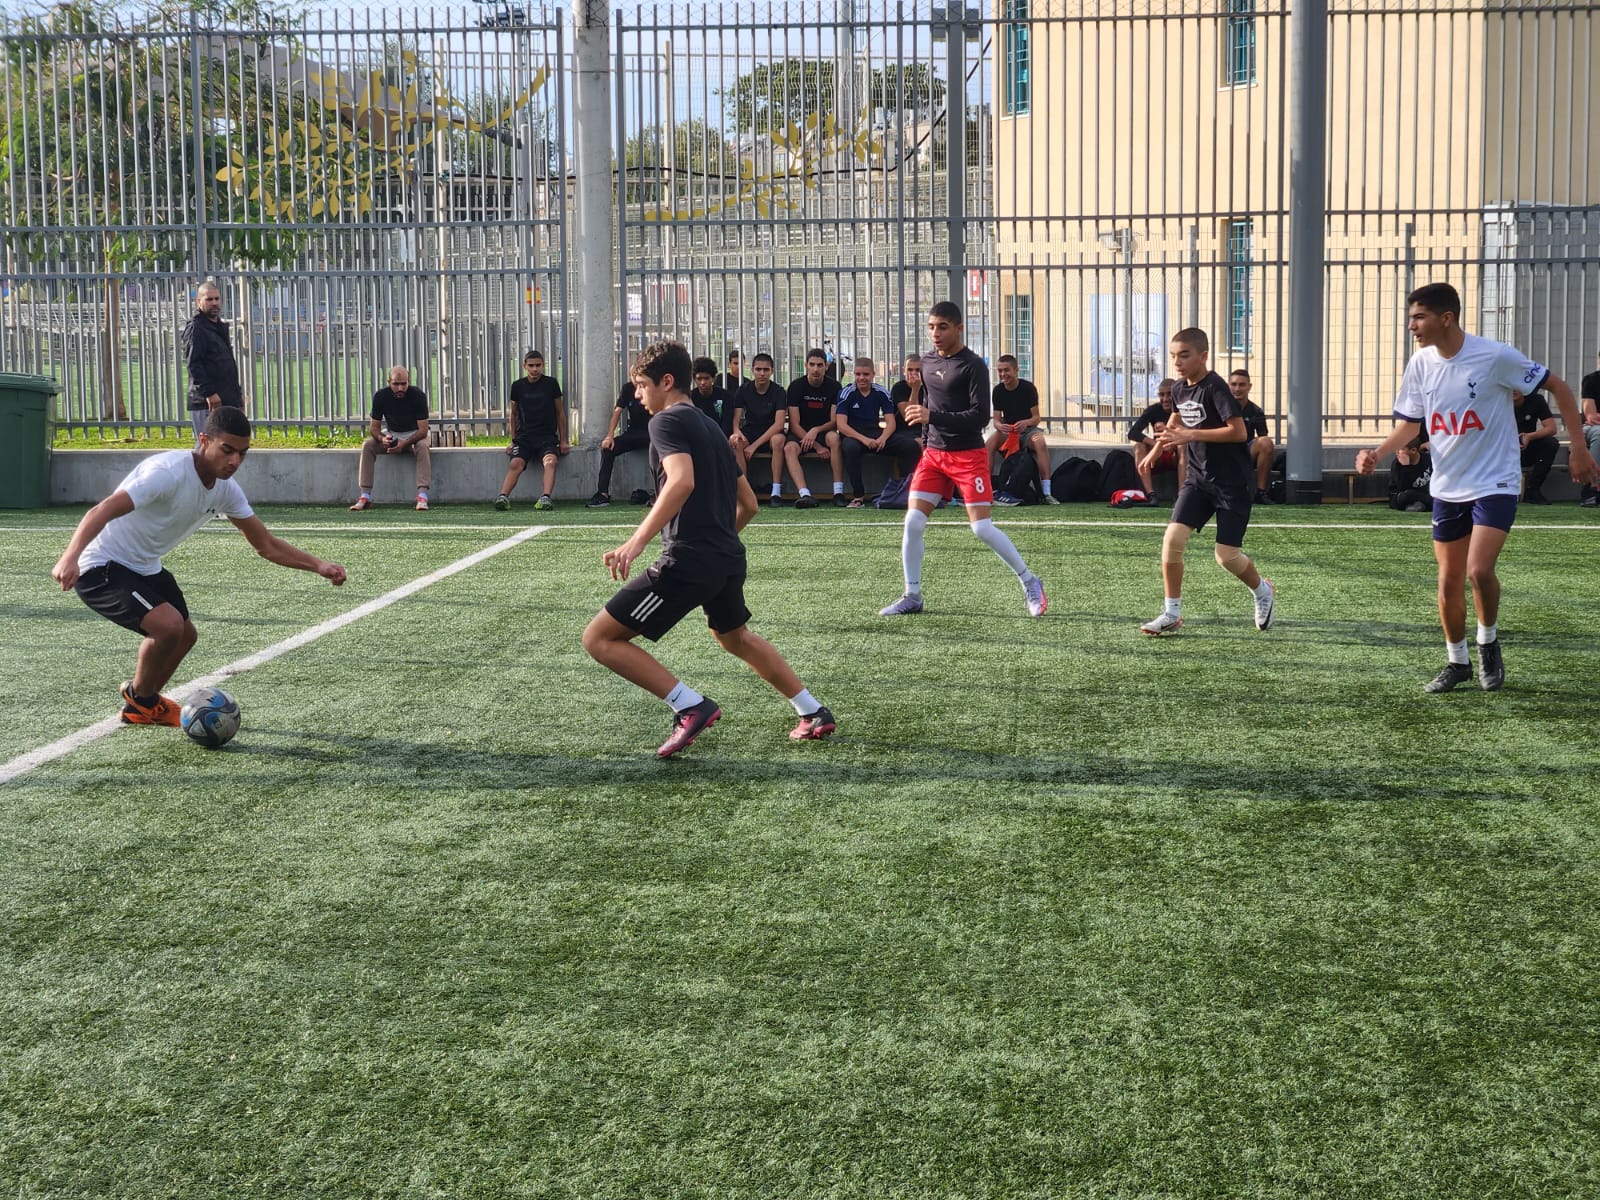 يافا: بالصور لجنة الدعوة والإرشاد تختتم بطولة التسامح لكرة القدم